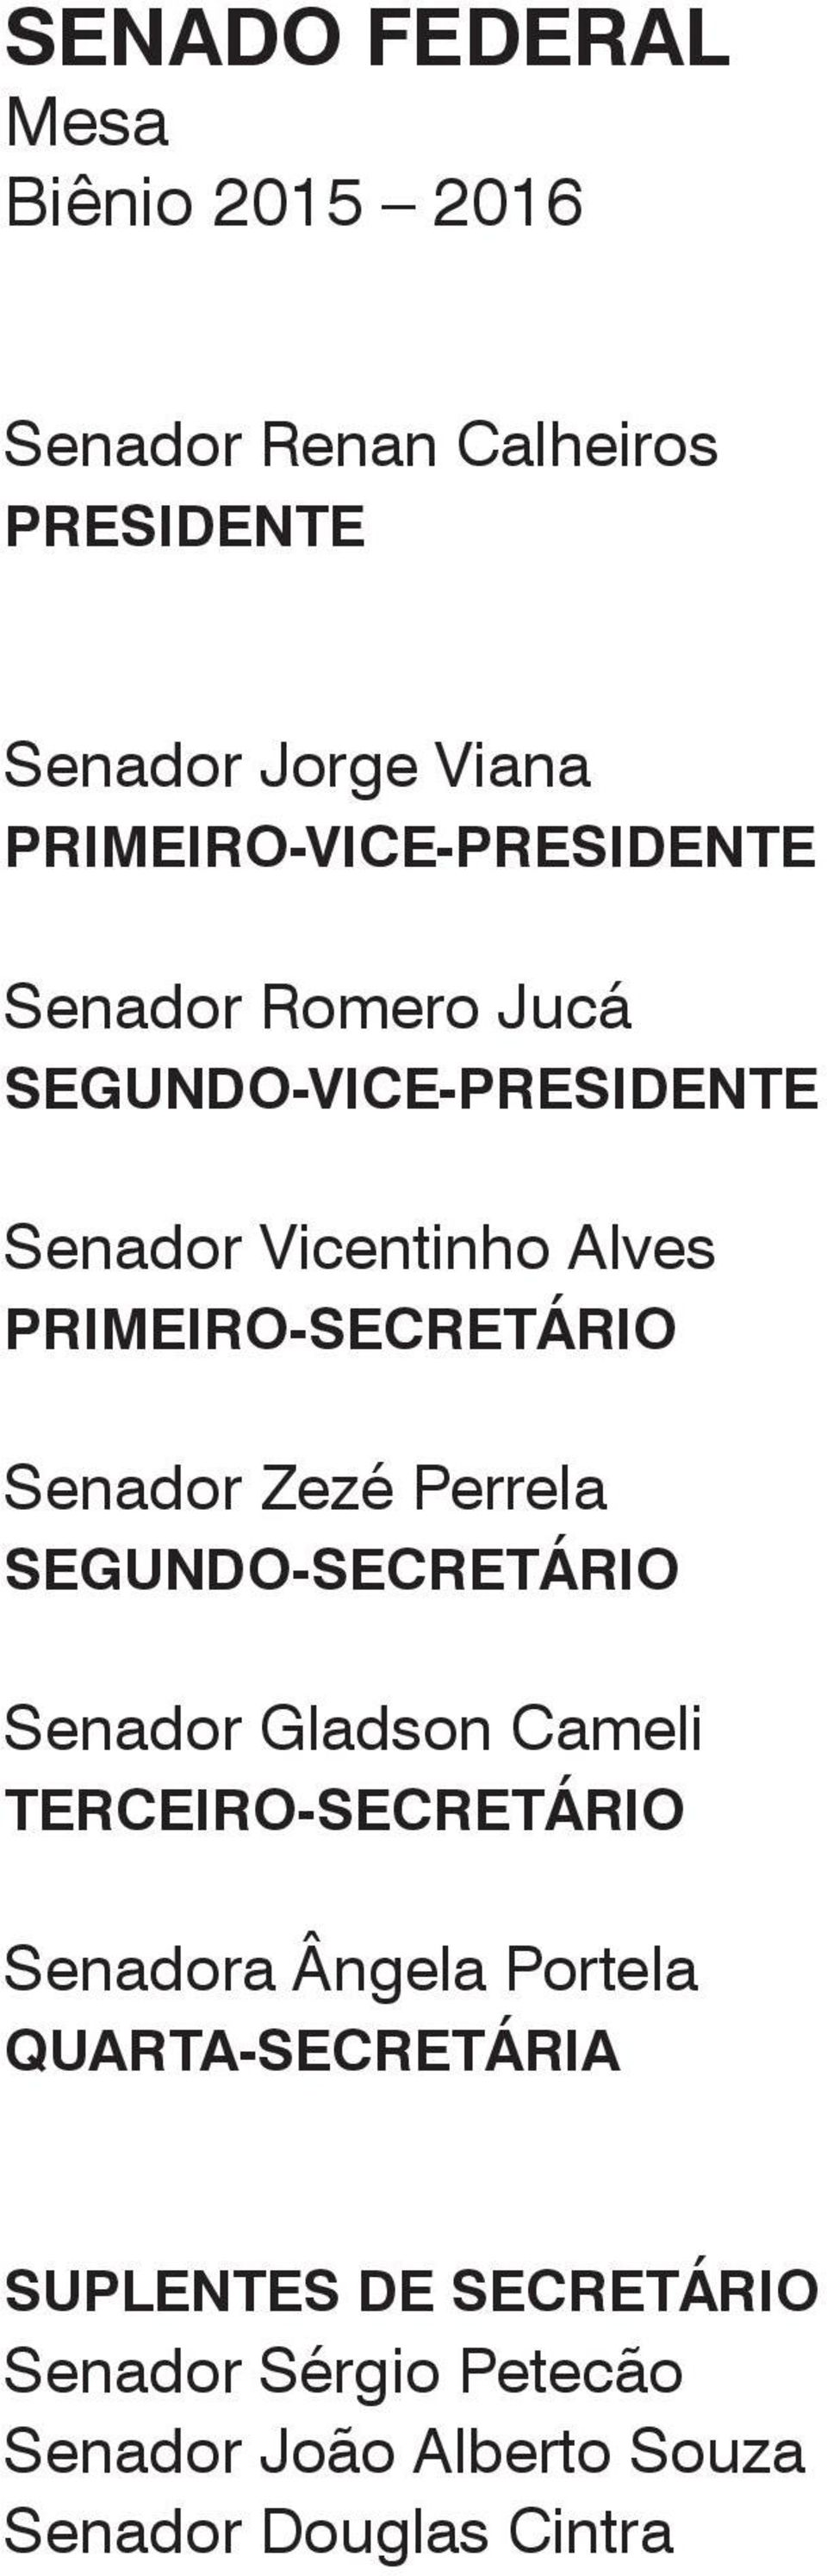 PRIMEIRO-SECRETÁRIO Senador Zezé Perrela SEGUNDO-SECRETÁRIO Senador Gladson Cameli TERCEIRO-SECRETÁRIO